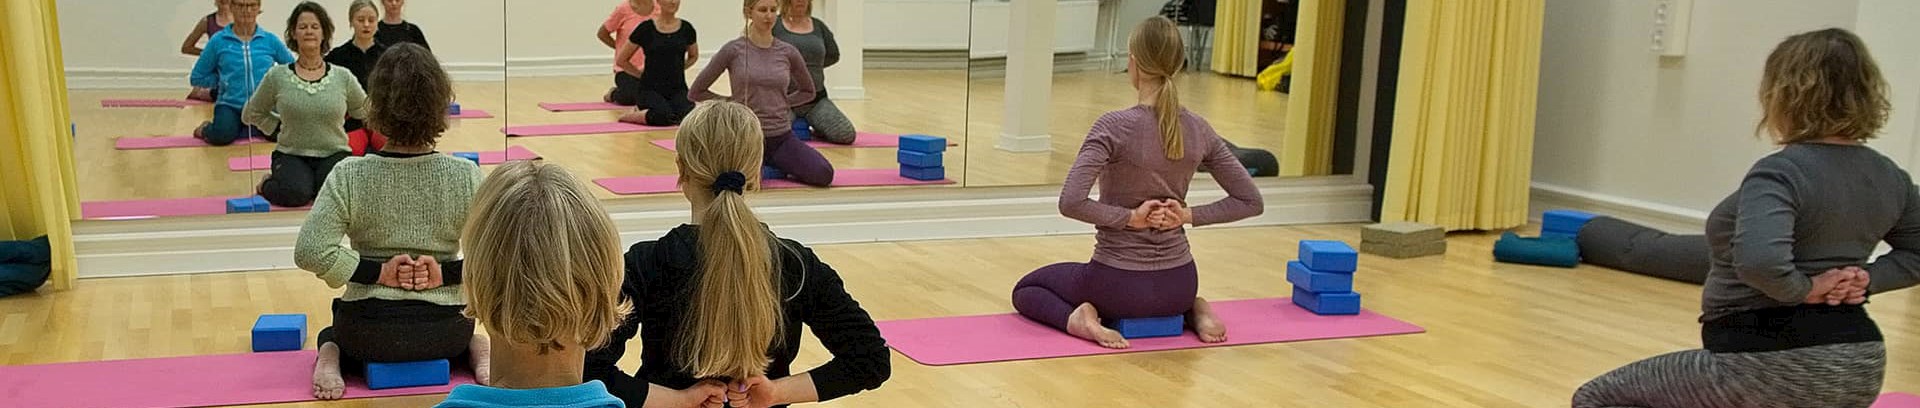 Kursister der dyrker yoga på yogakursus ved FOF Aarhus